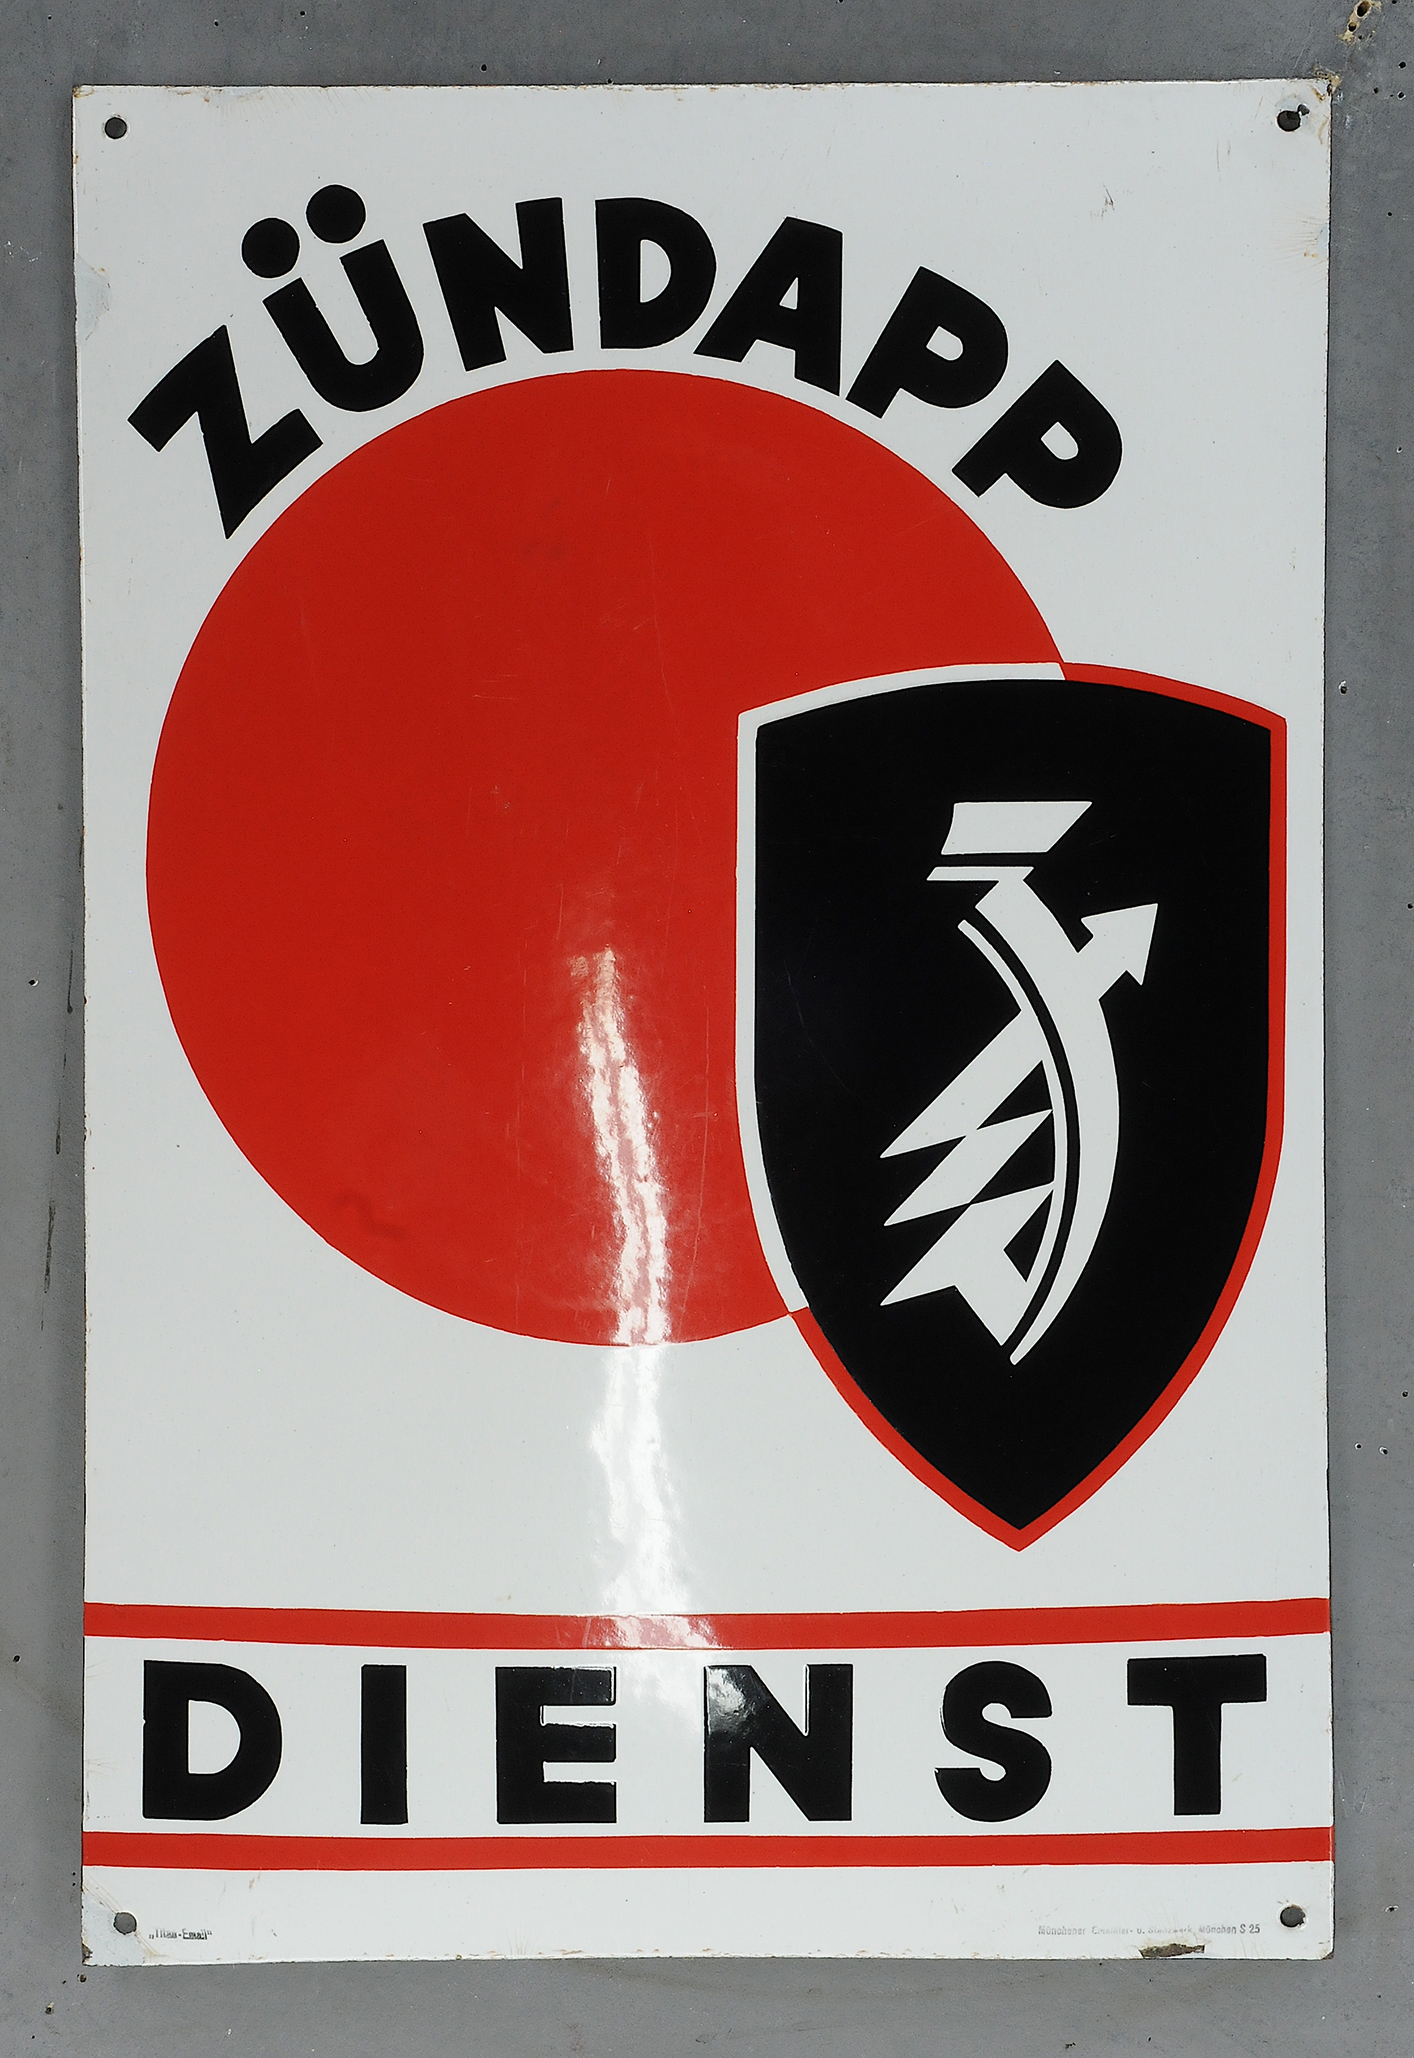 Zündapp Dienst - Image 3 of 3